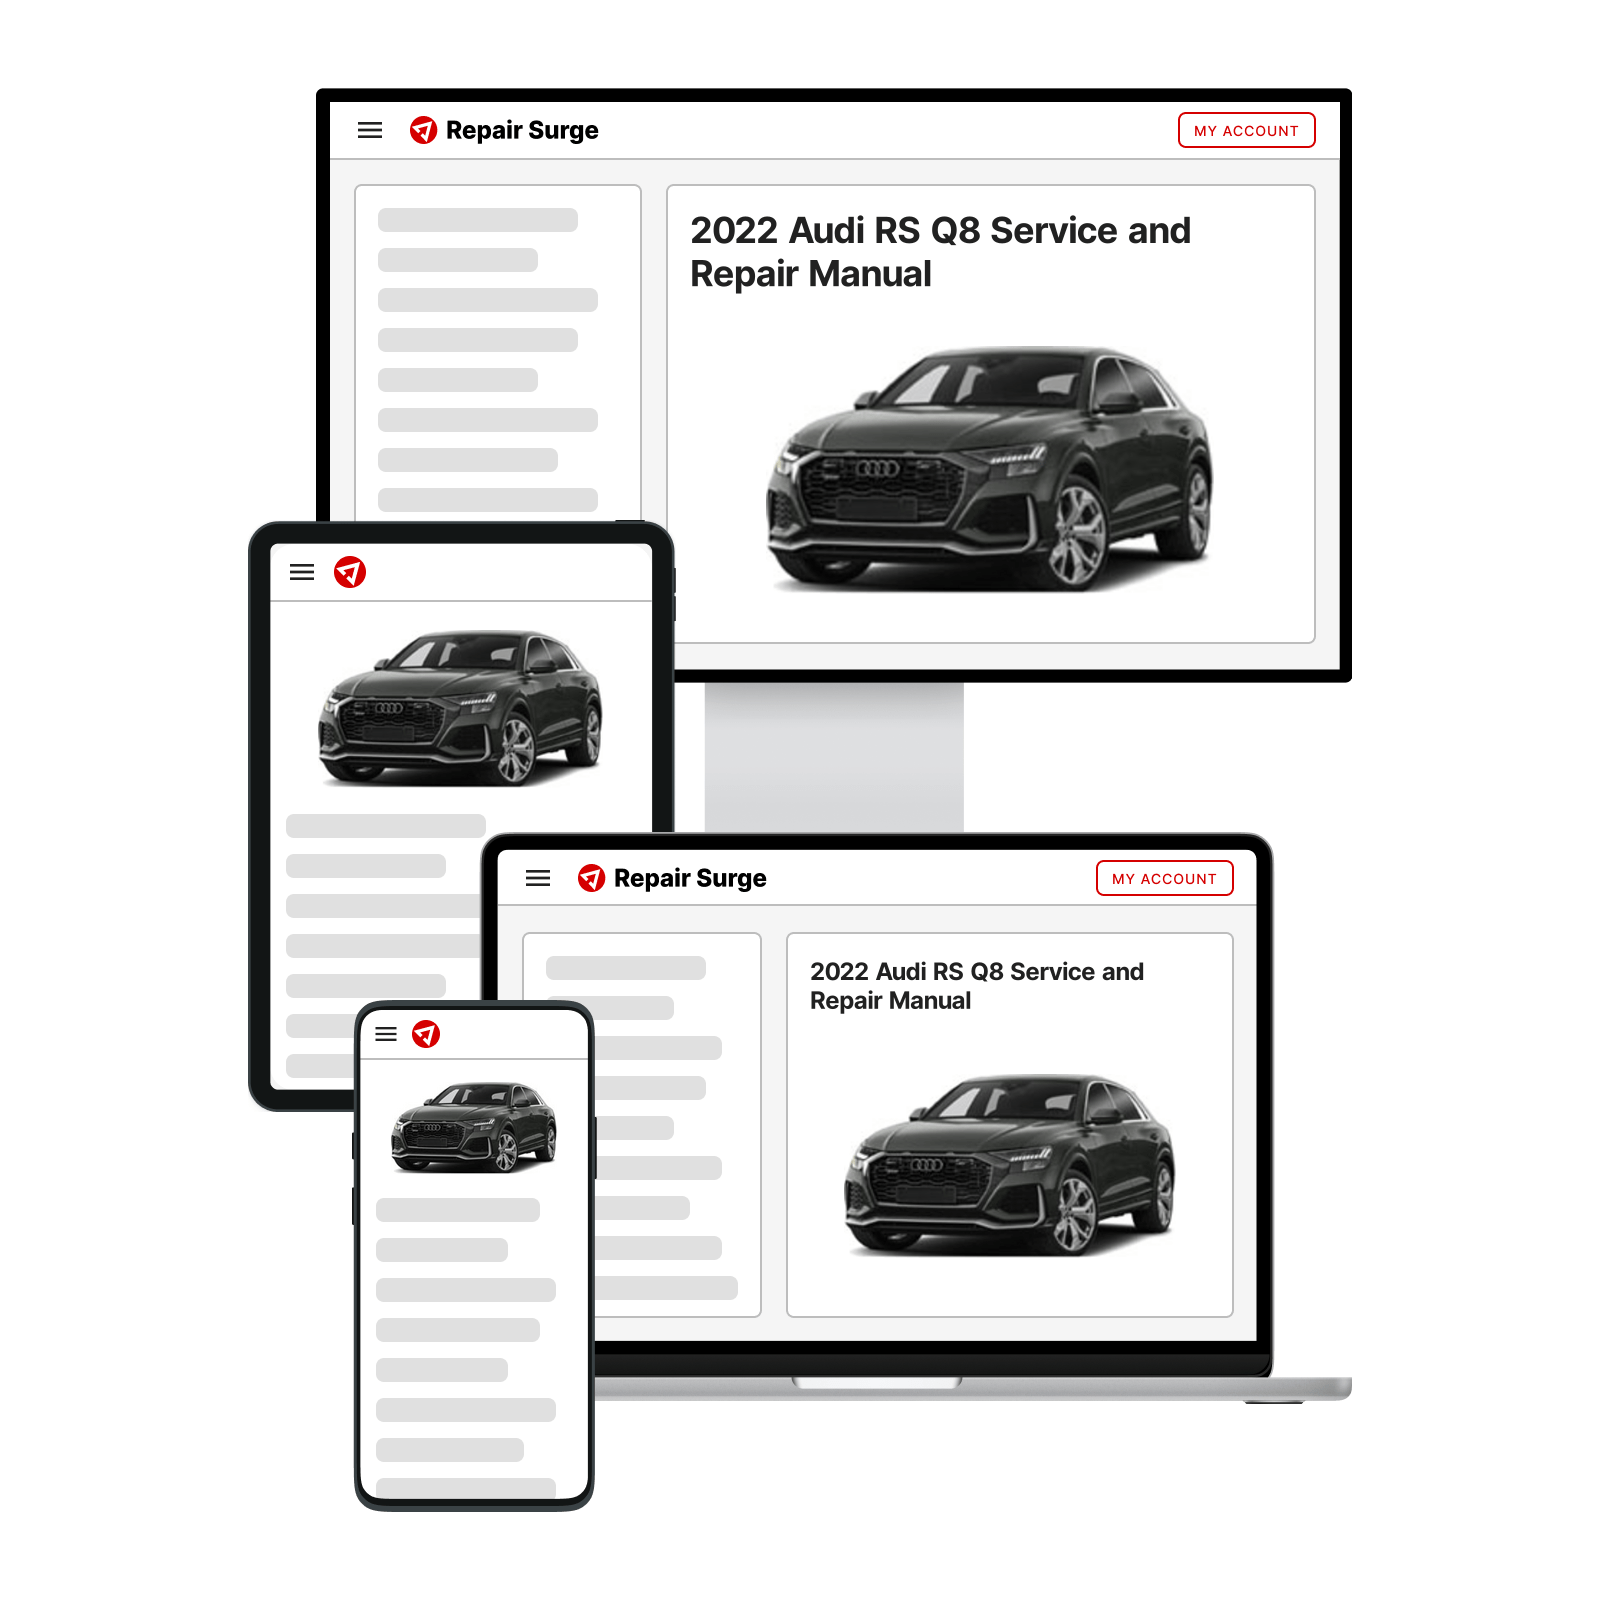 2022 Audi RS Q8 service and repair manual hero image